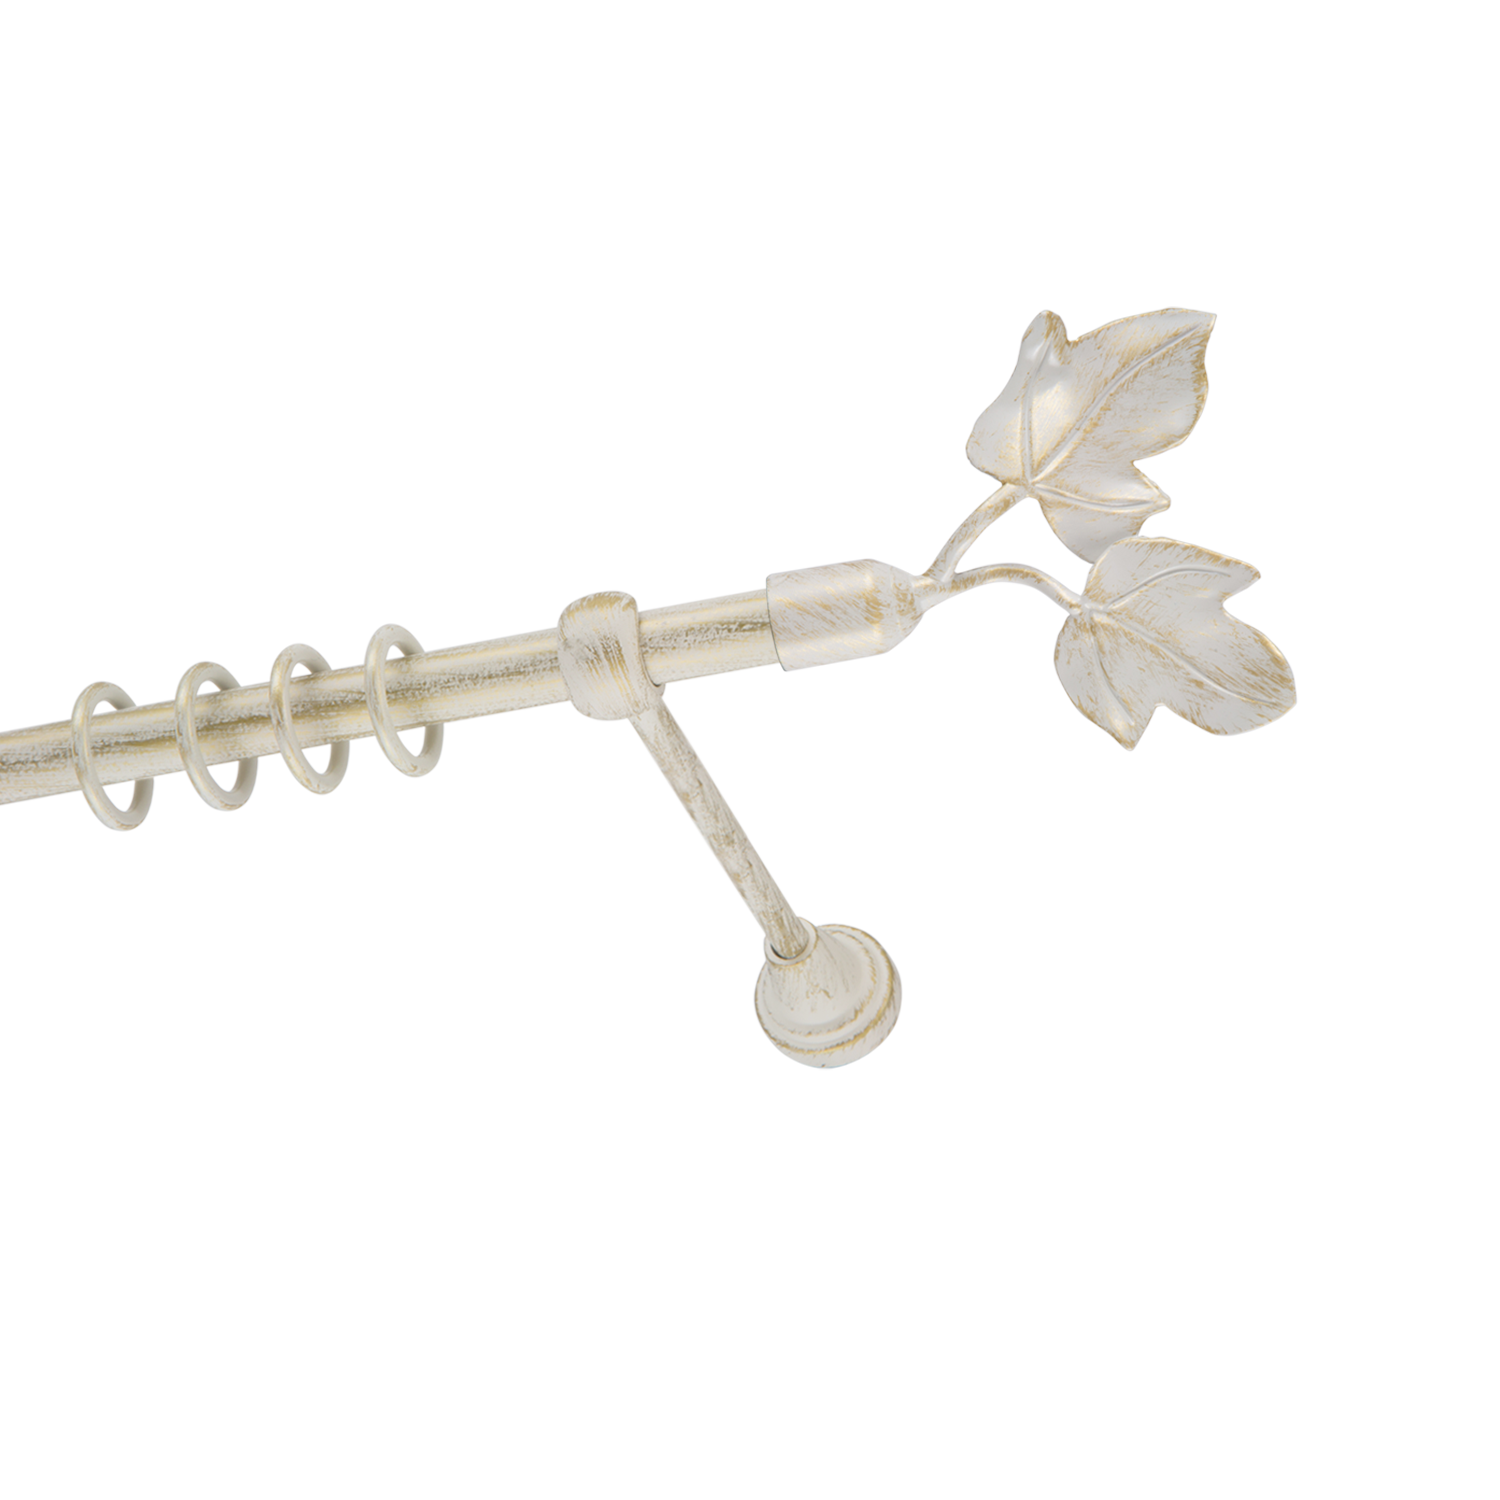 Металлический карниз для штор Листья, однорядный 16 мм, белый, гладкая штанга, длина 140 см - фото Wikidecor.ru